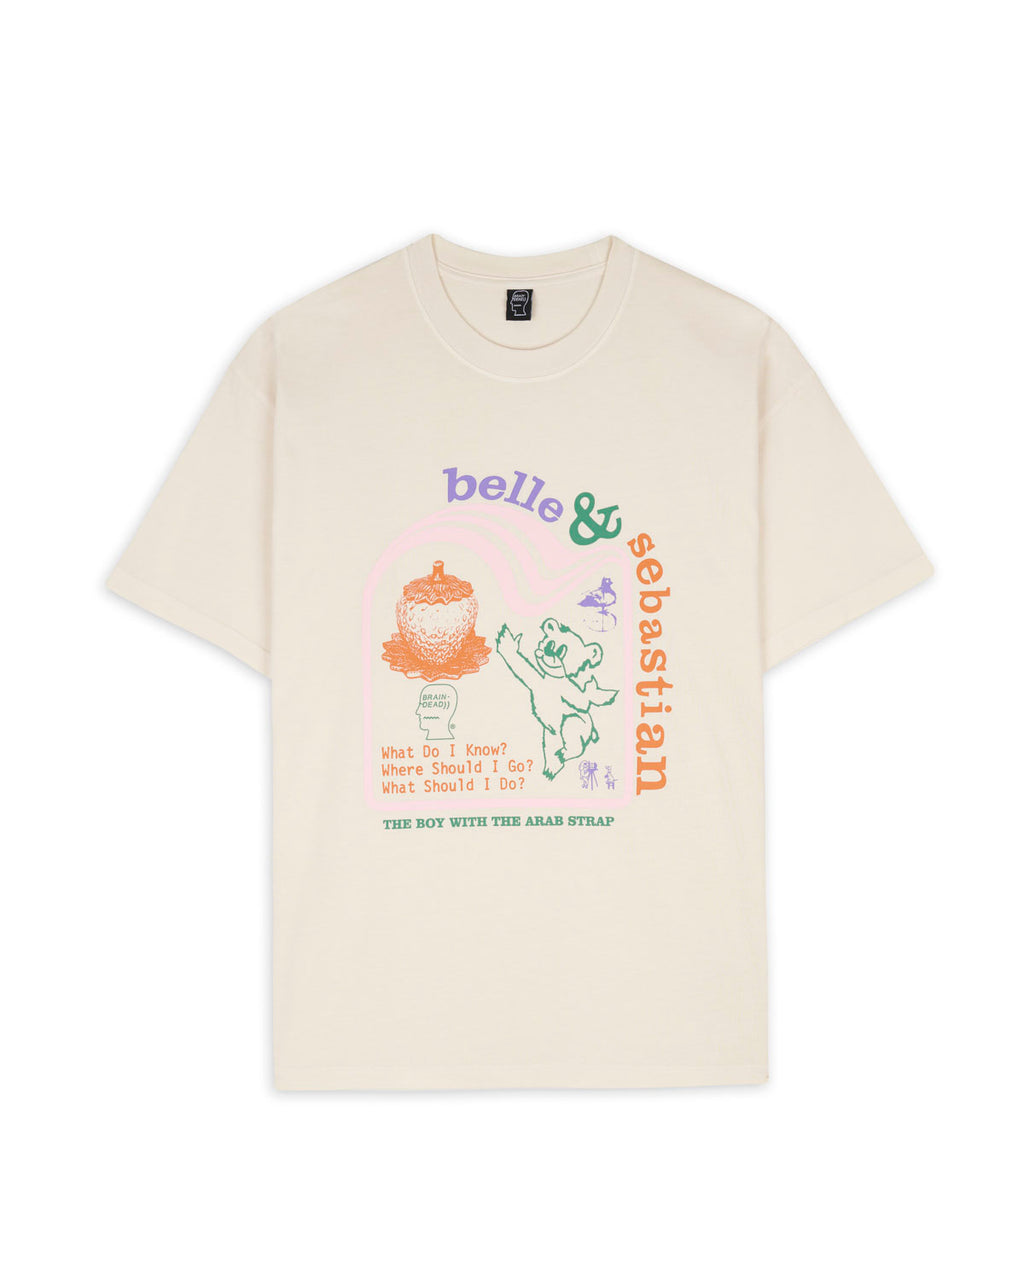 Brain Dead x Belle & Sebastian Boy With The Arab Strap T-Shirt - Natural 1